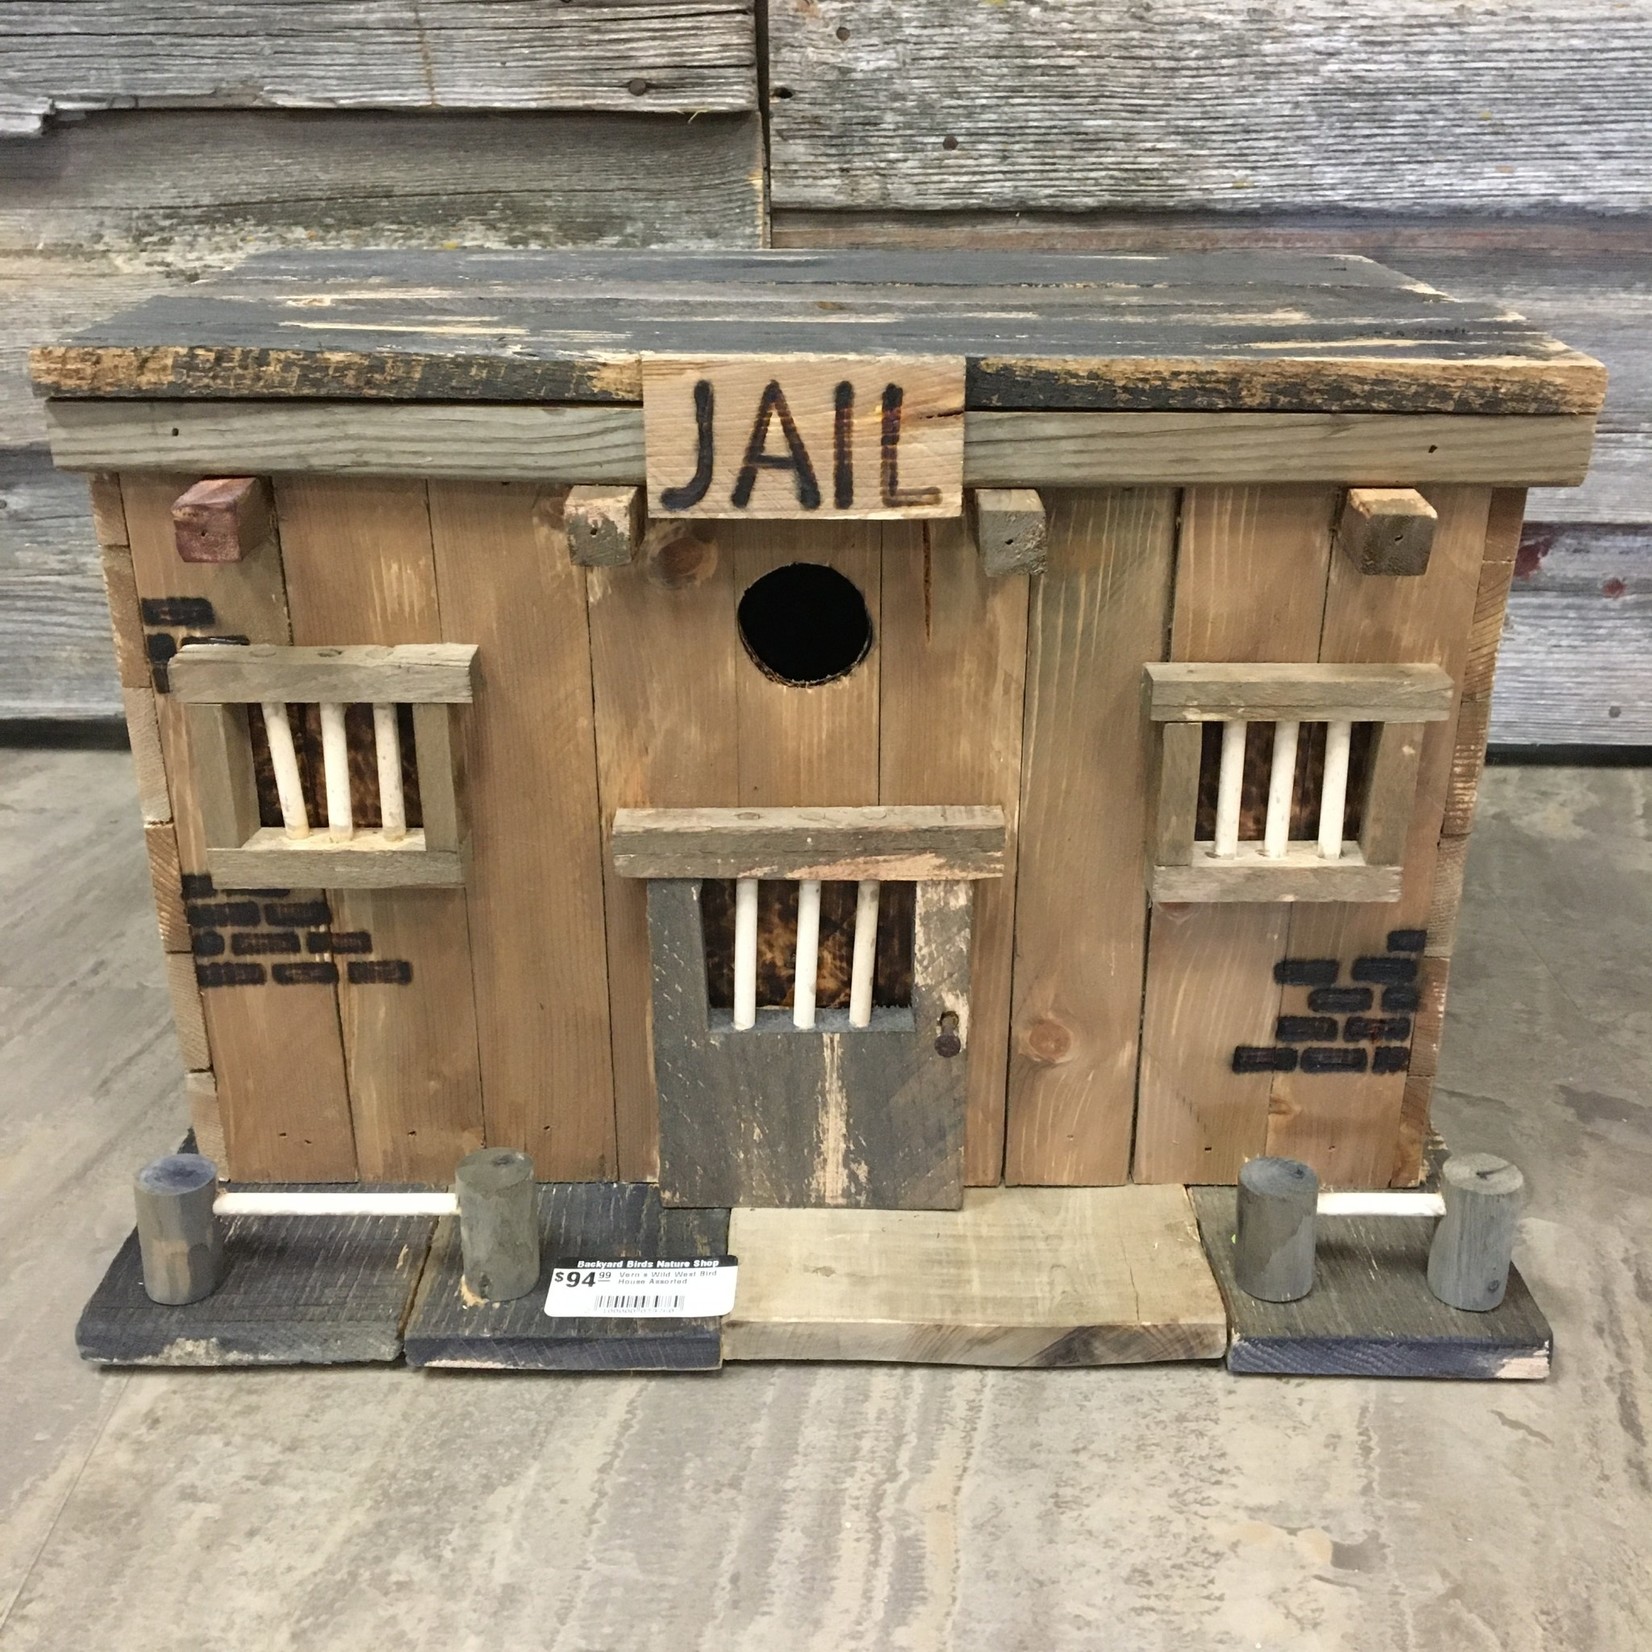 Vern's Wild West Bird House - Jail